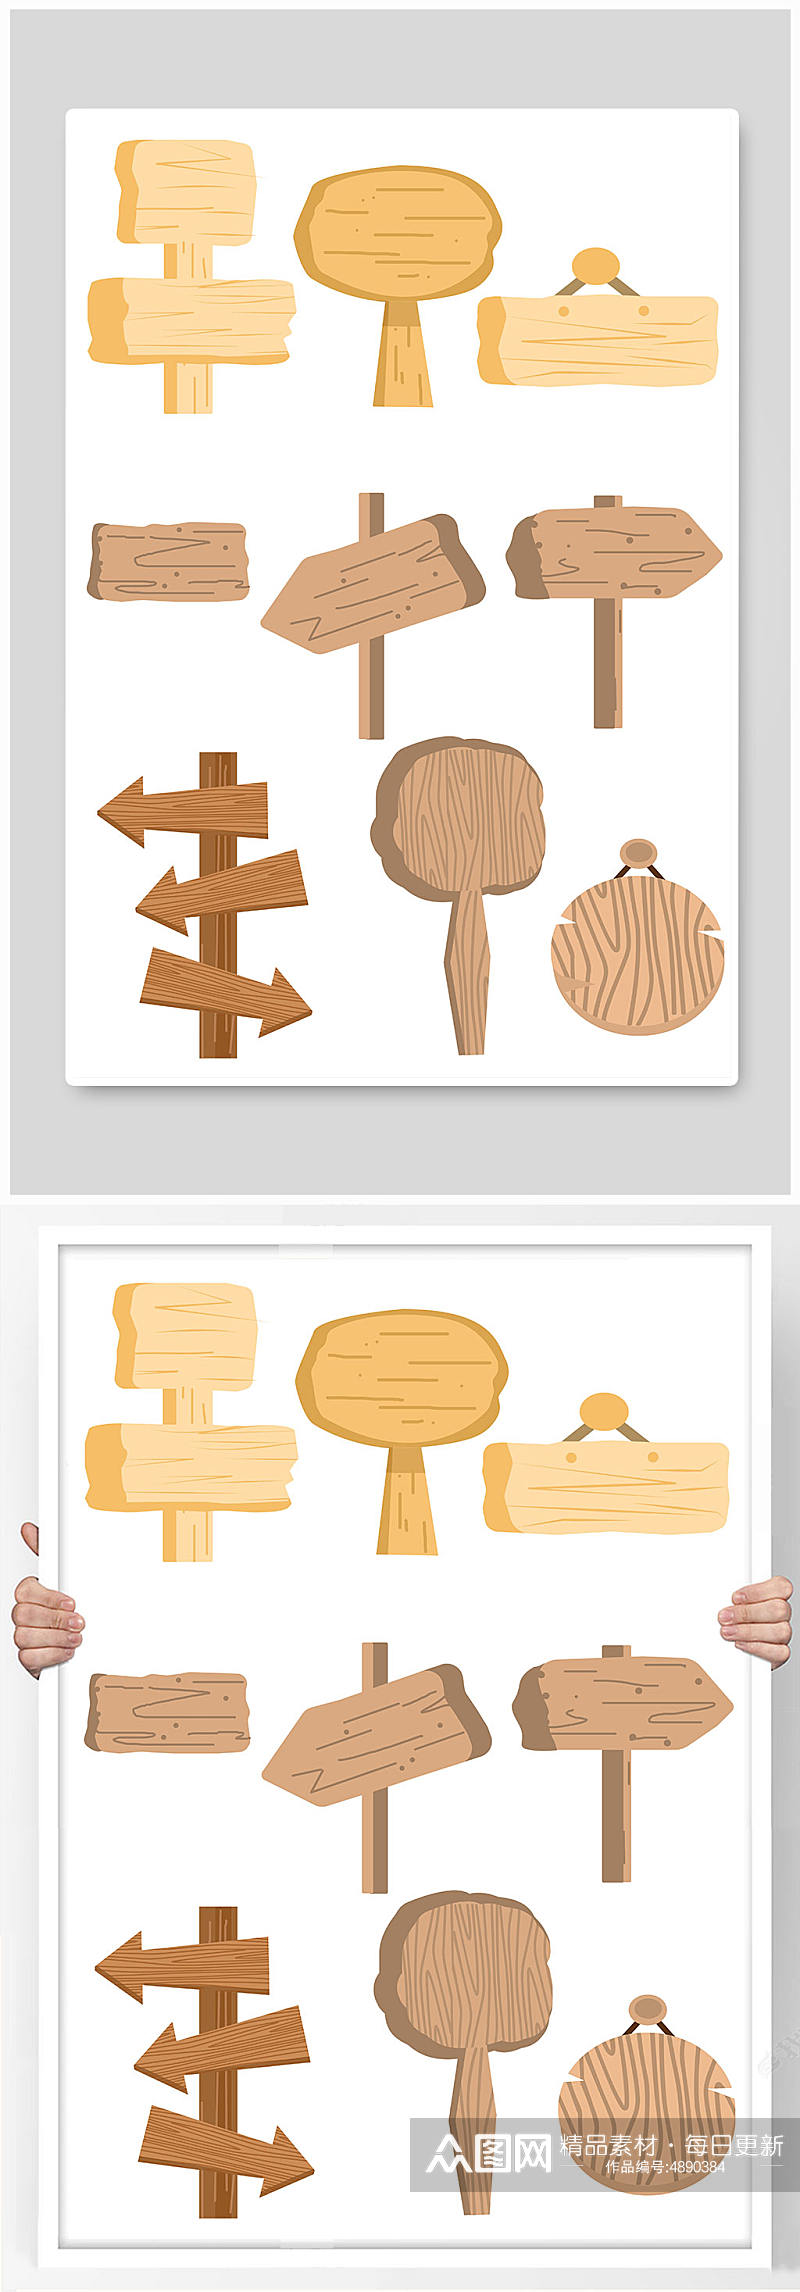 木纹路标指示牌元素插画素材